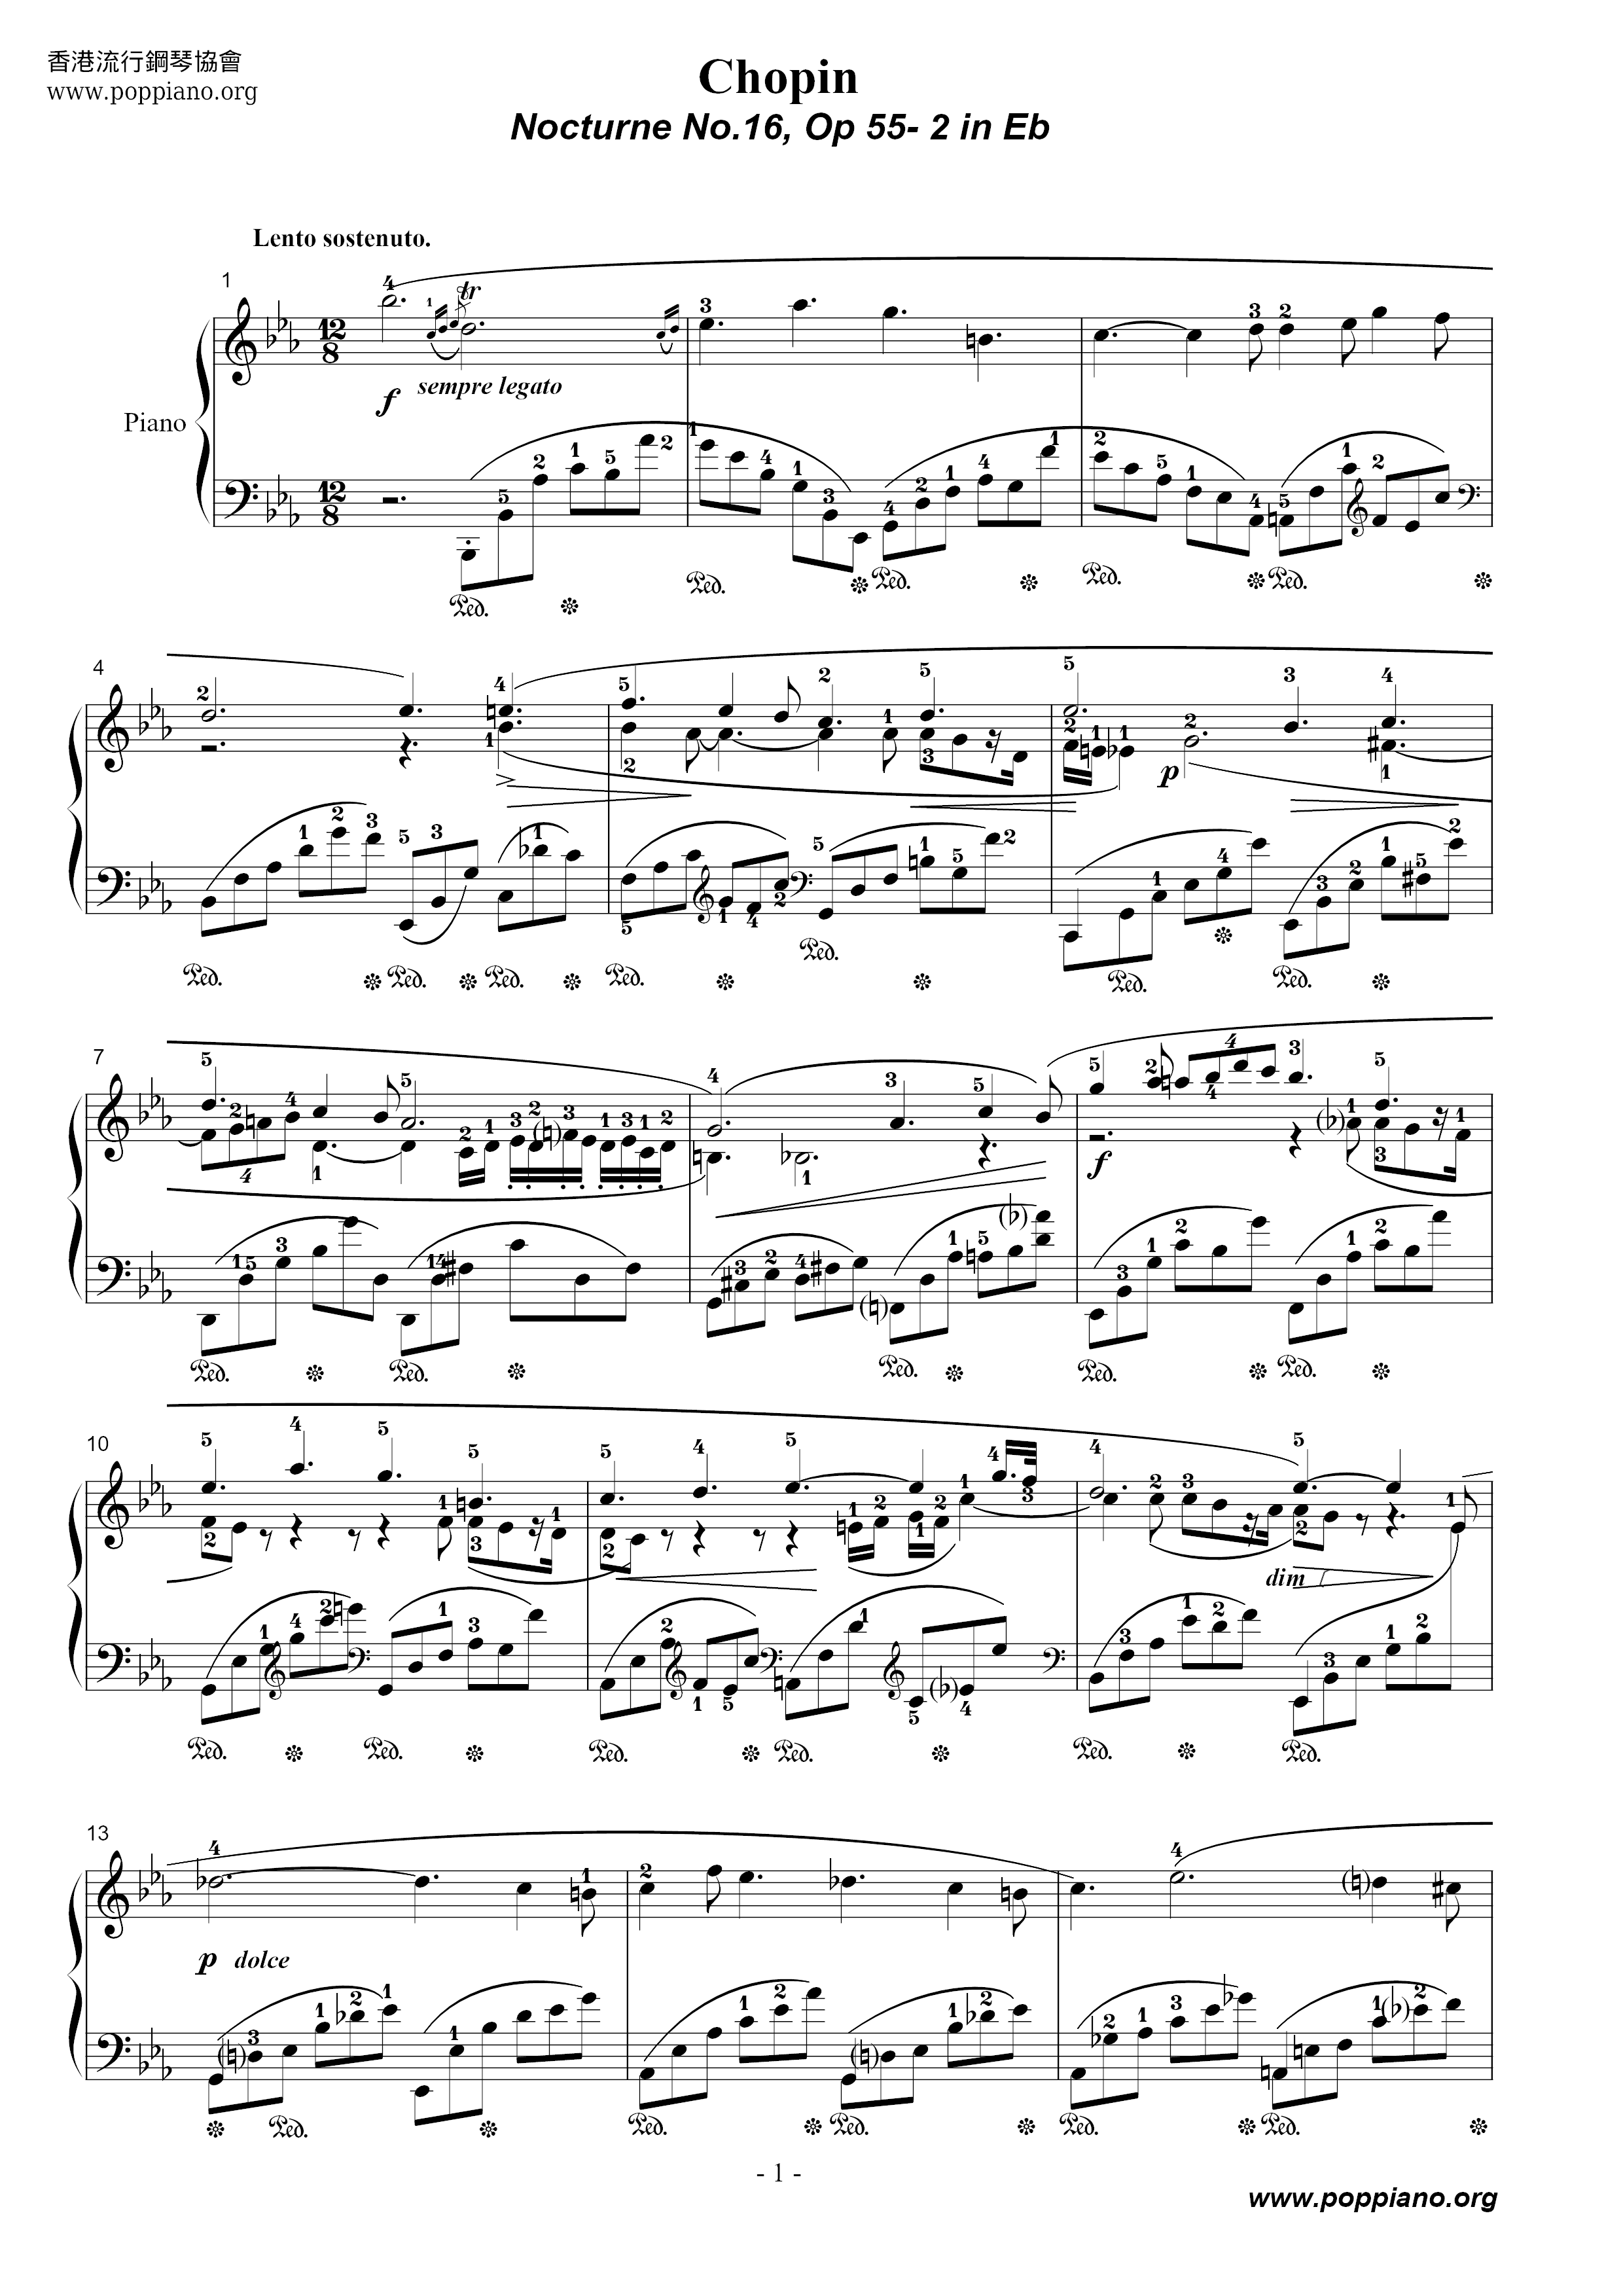 Nocturne No. 16 Score